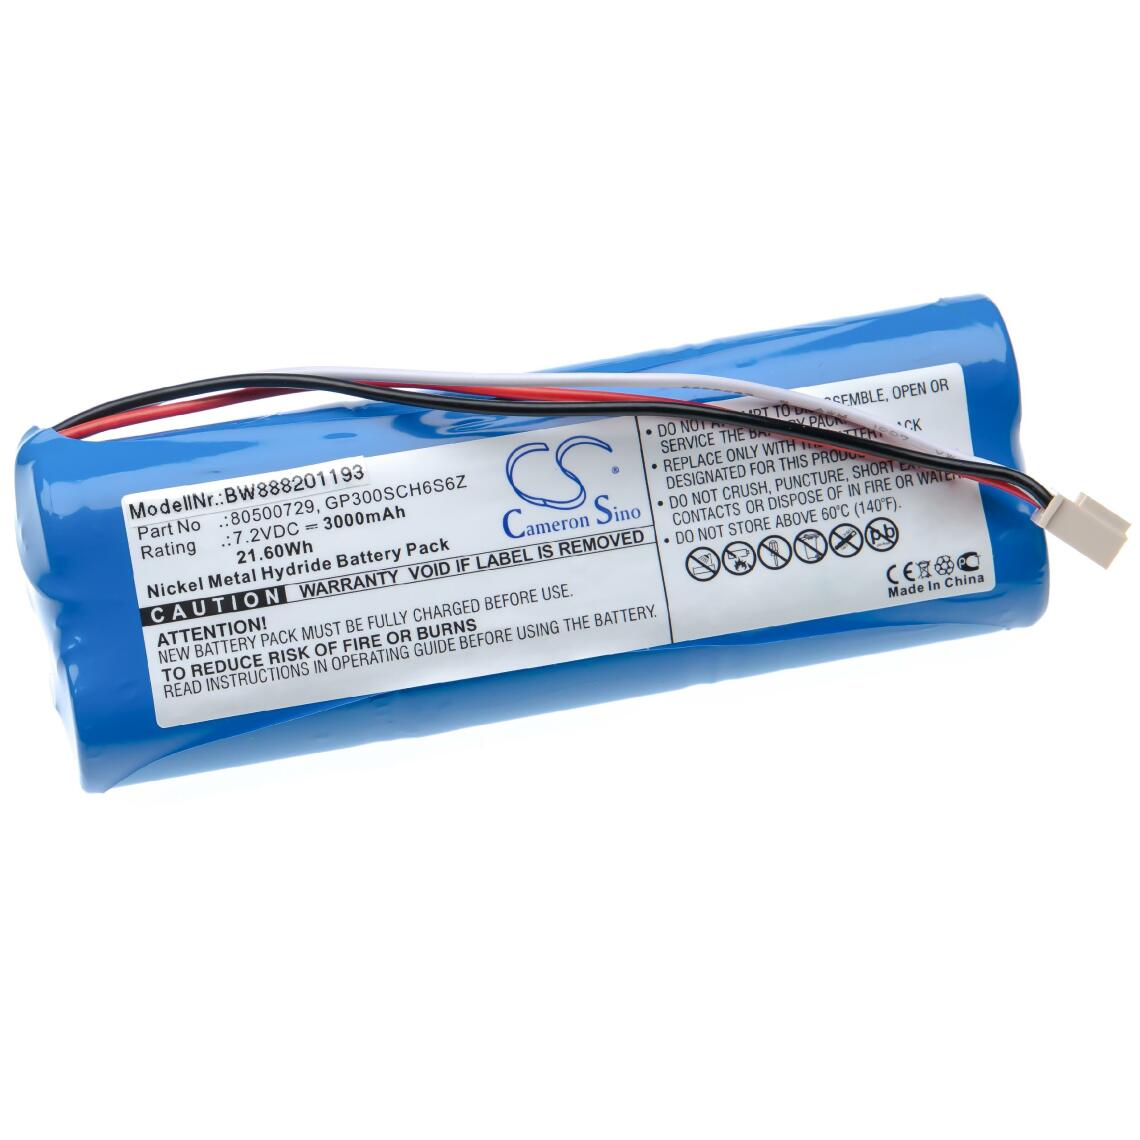 Vhbw - vhbw Batterie remplace OHAUS GP300SCH6S6Z, 80500729 pour outil de mesure (3000mAh 7,2V NiMH) - Piles rechargeables